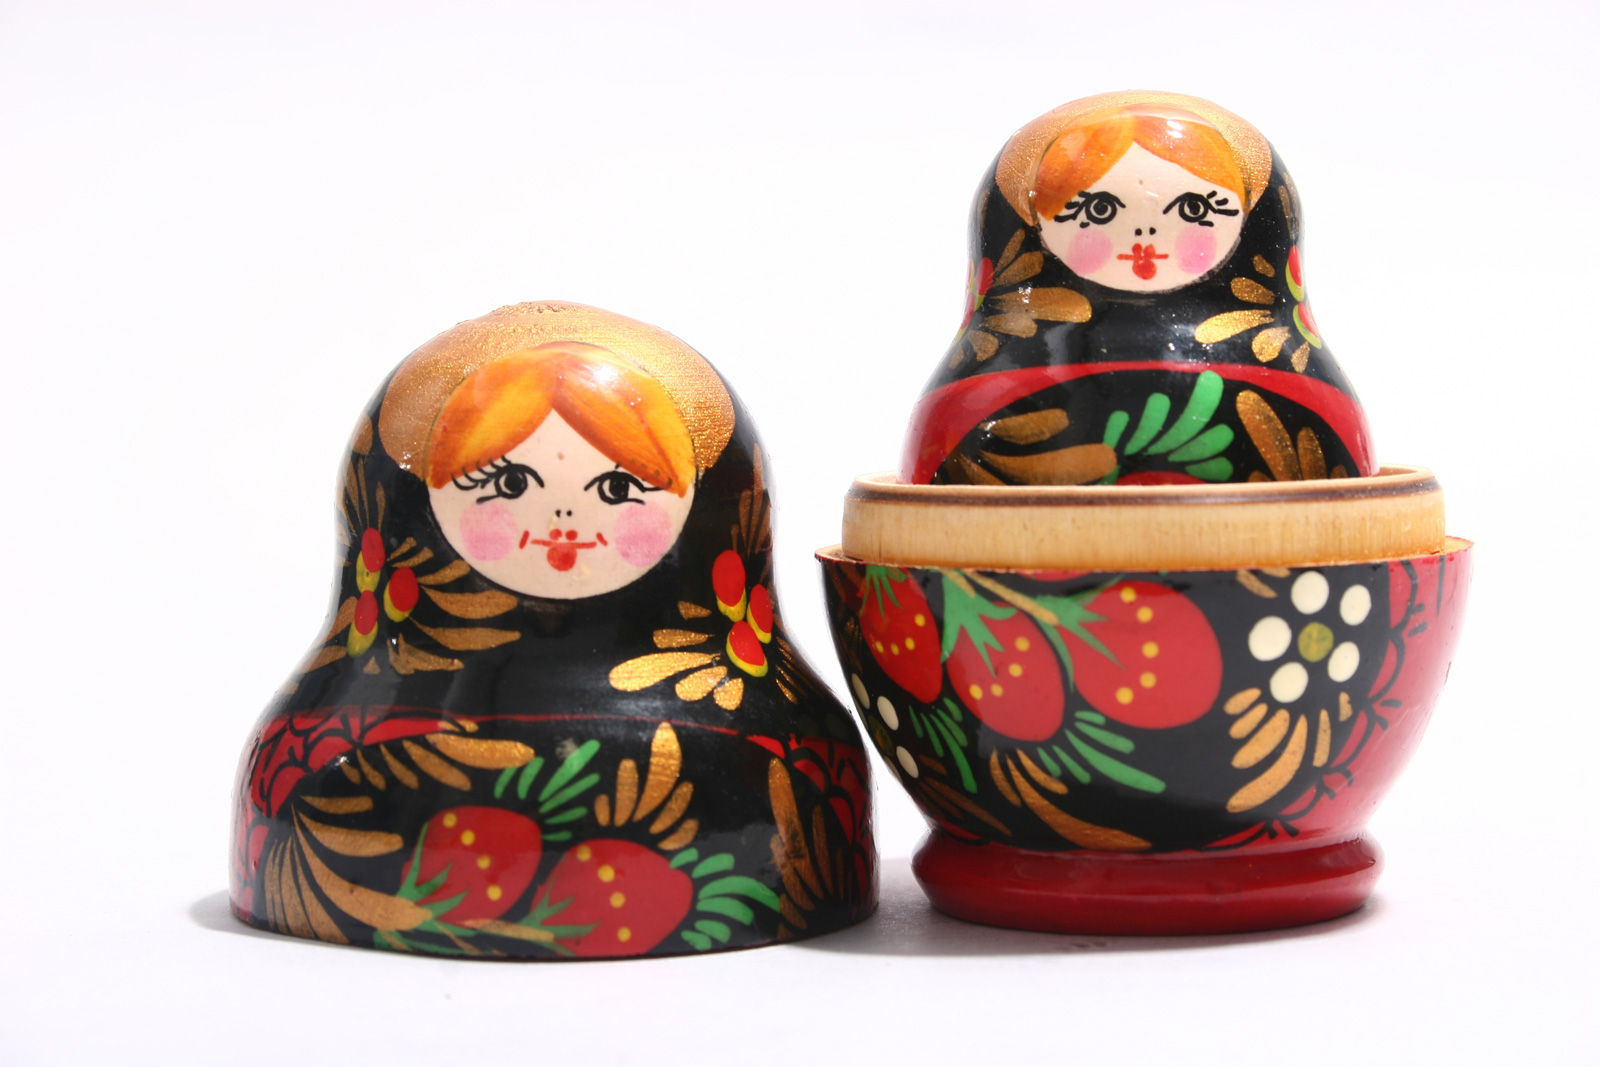 Two matryoshka dolls